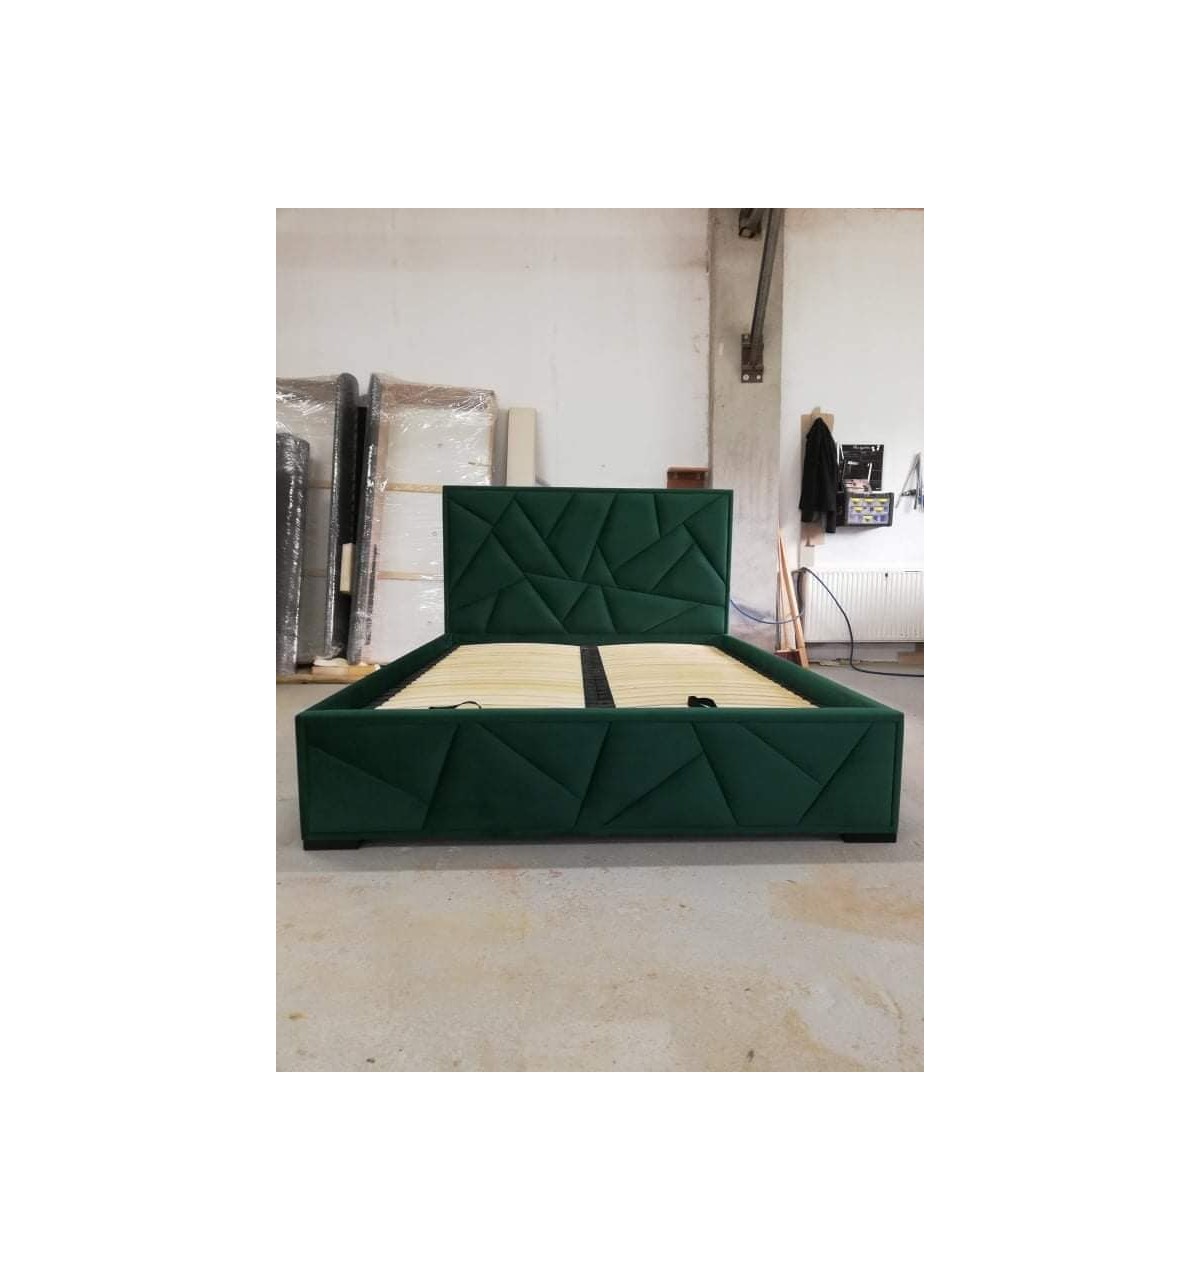 Łóżko na zamówienie 160x200